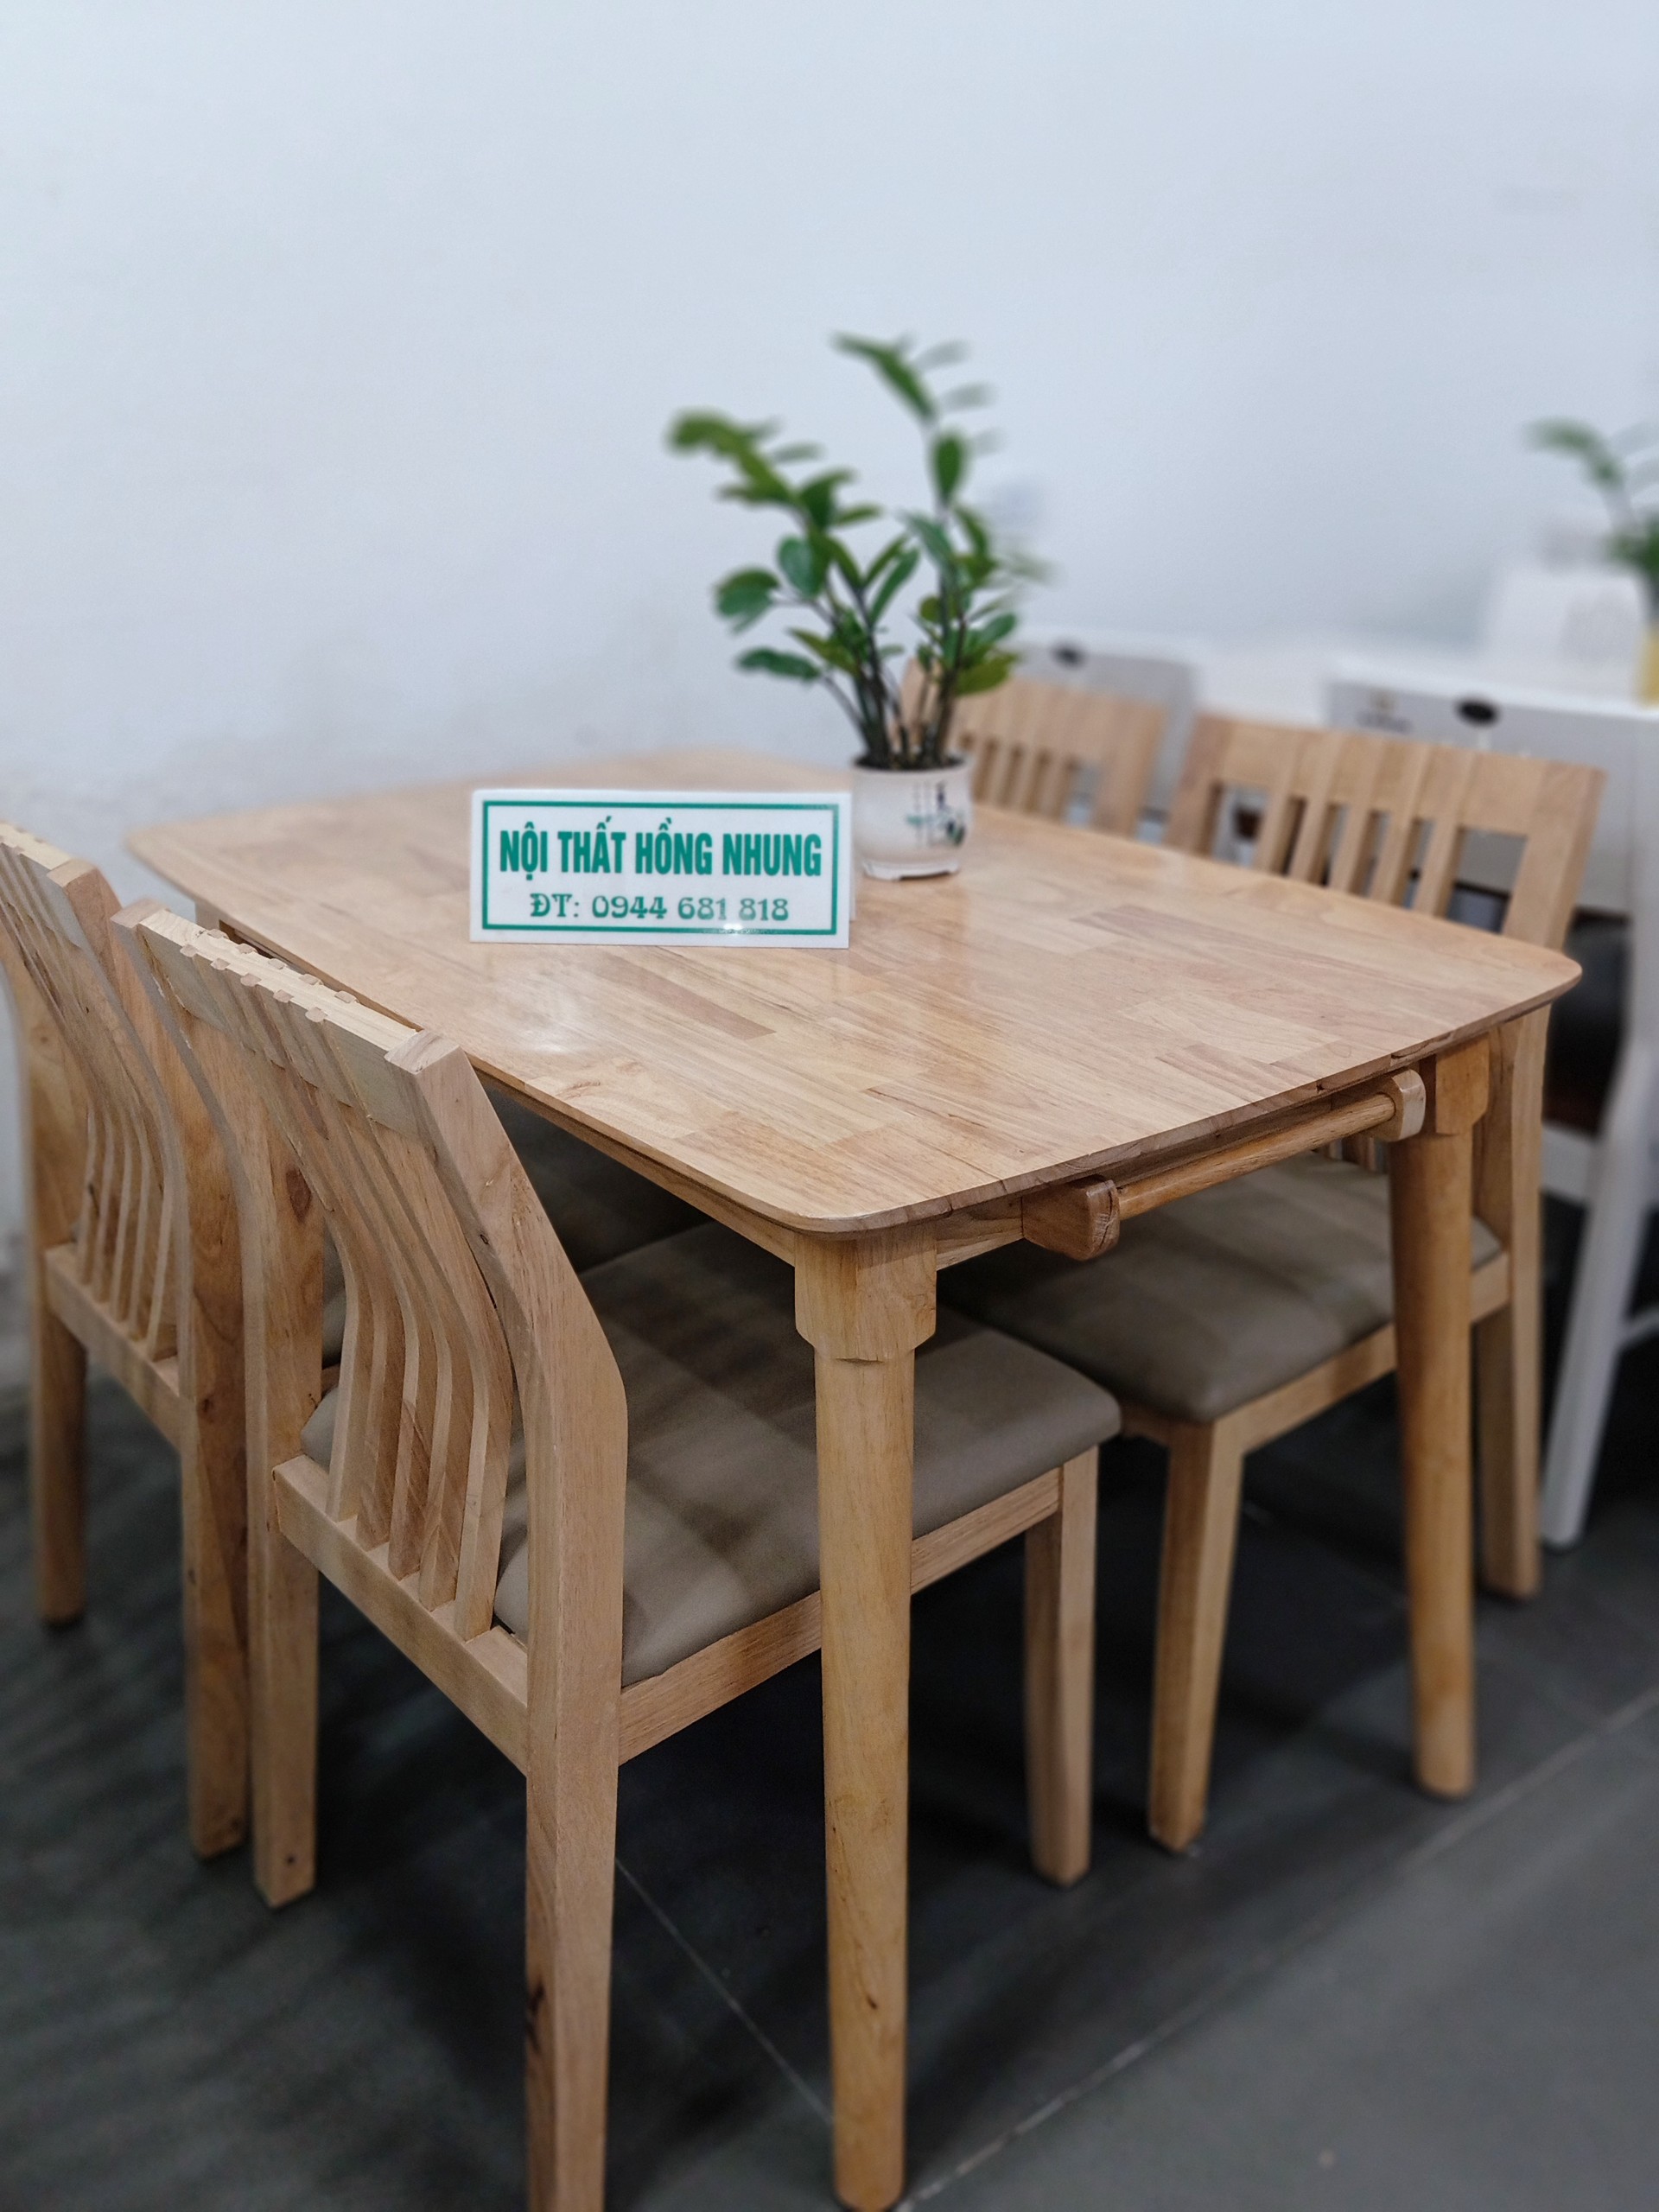 Cùng bộ bàn ghế ăn gỗ cao su giá rẻ, bạn sẽ có được một bộ đồ nội thất đáp ứng nhu cầu sử dụng cũng như thẩm mỹ. Thiết kế tựa nan vừa đem lại sự thoải mái cho người sử dụng vừa tạo điểm nhấn cho không gian phòng ăn.